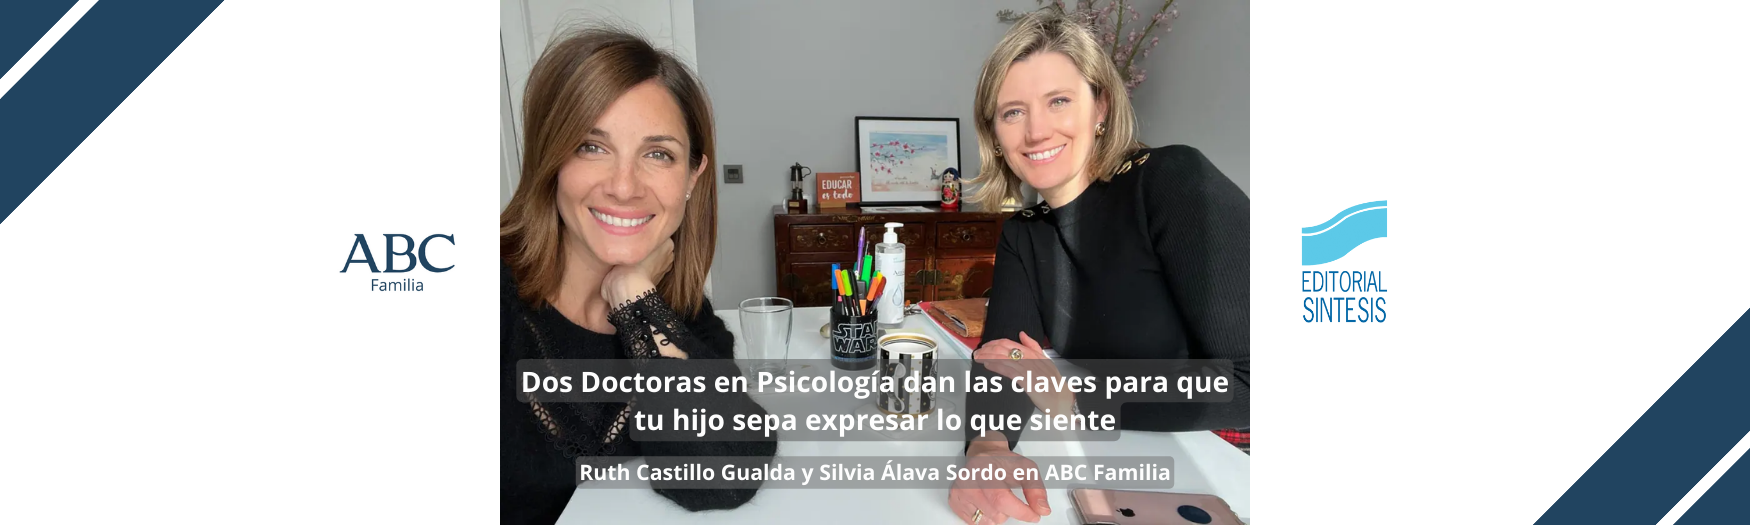 Ruth Castillo Gualda y Silvia Álava Sordo, autoras de Inteligencia emocional en familia, en ABC Familia